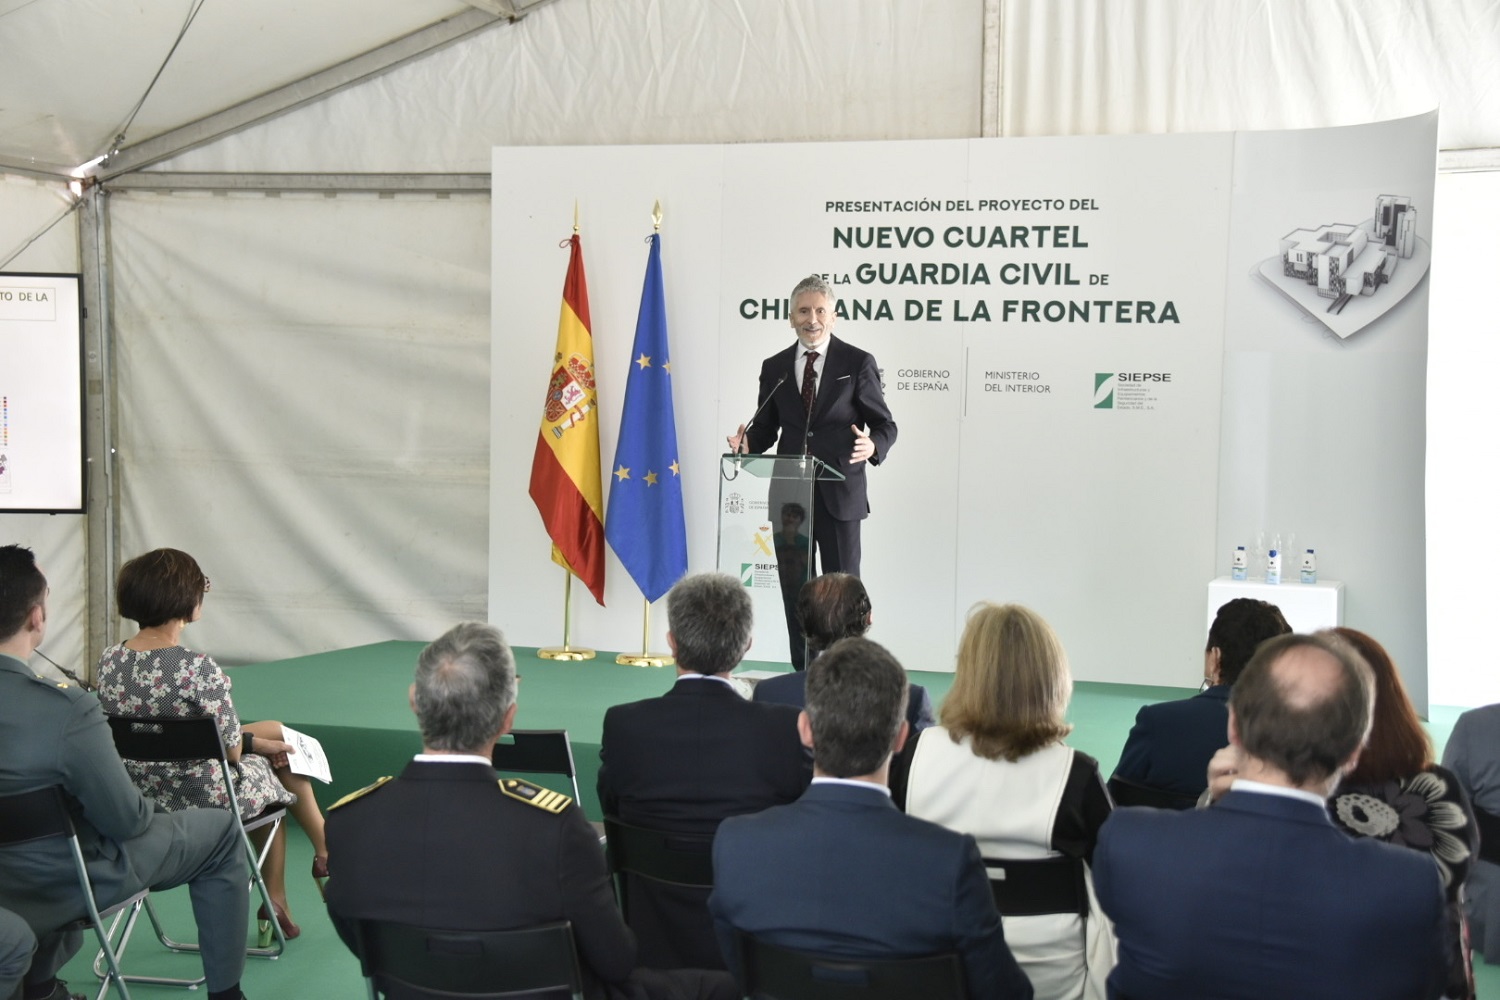 Grande-Marlaska presenta las obras de la comisaría de Puerto de Santa María y del cuartel de Chiclana, con una inversión de 22 millones